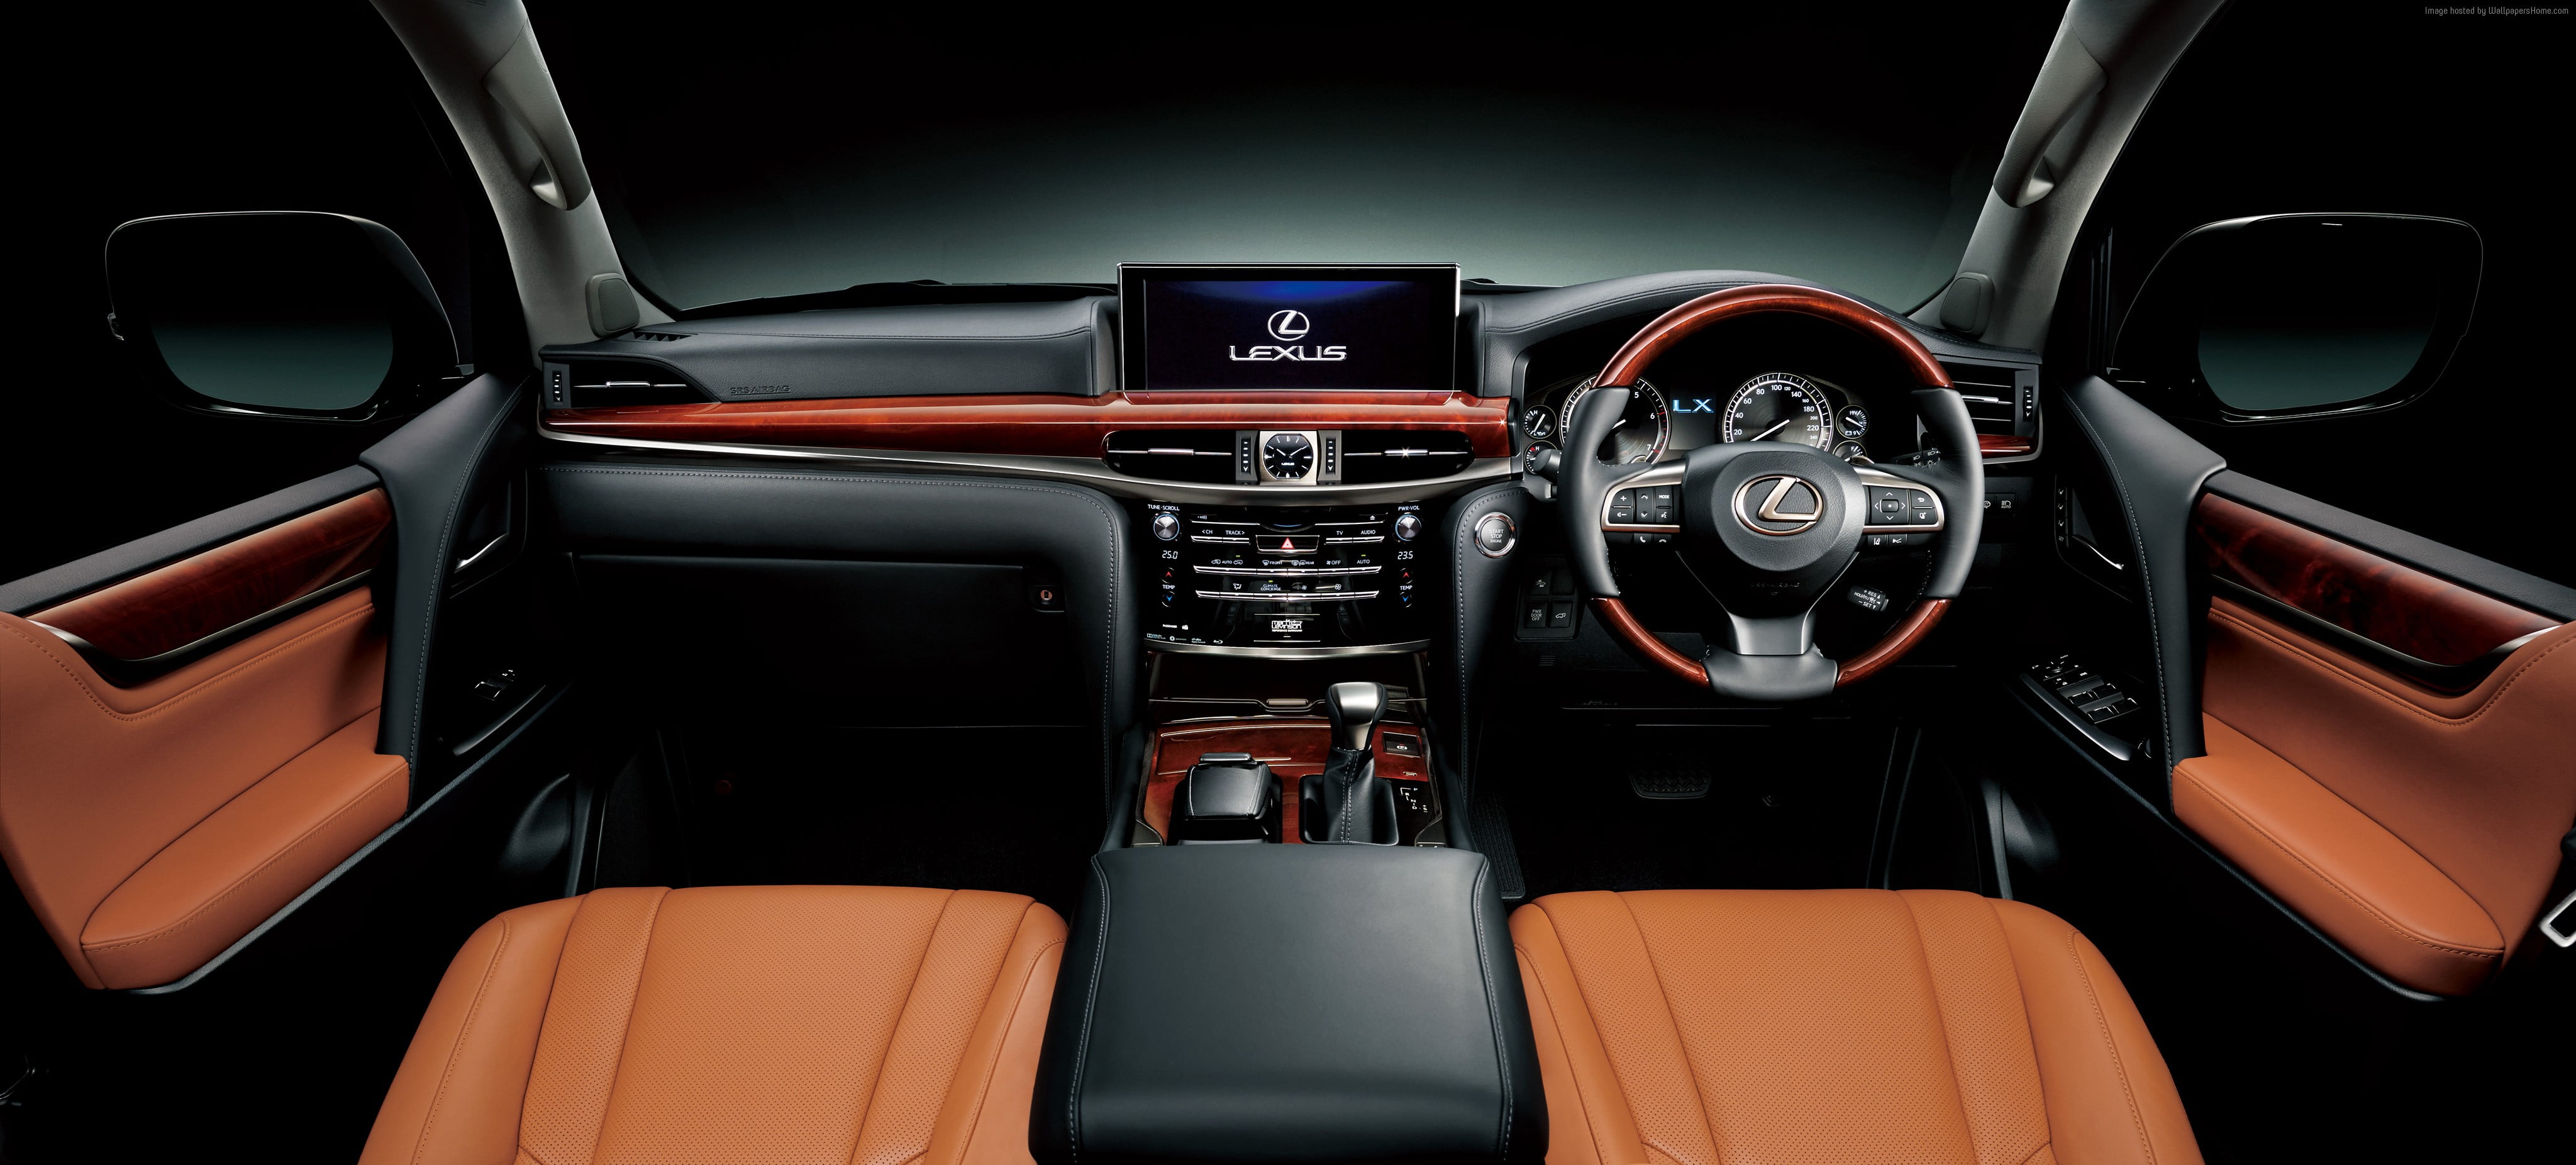 interior photo of Lexus vehicle